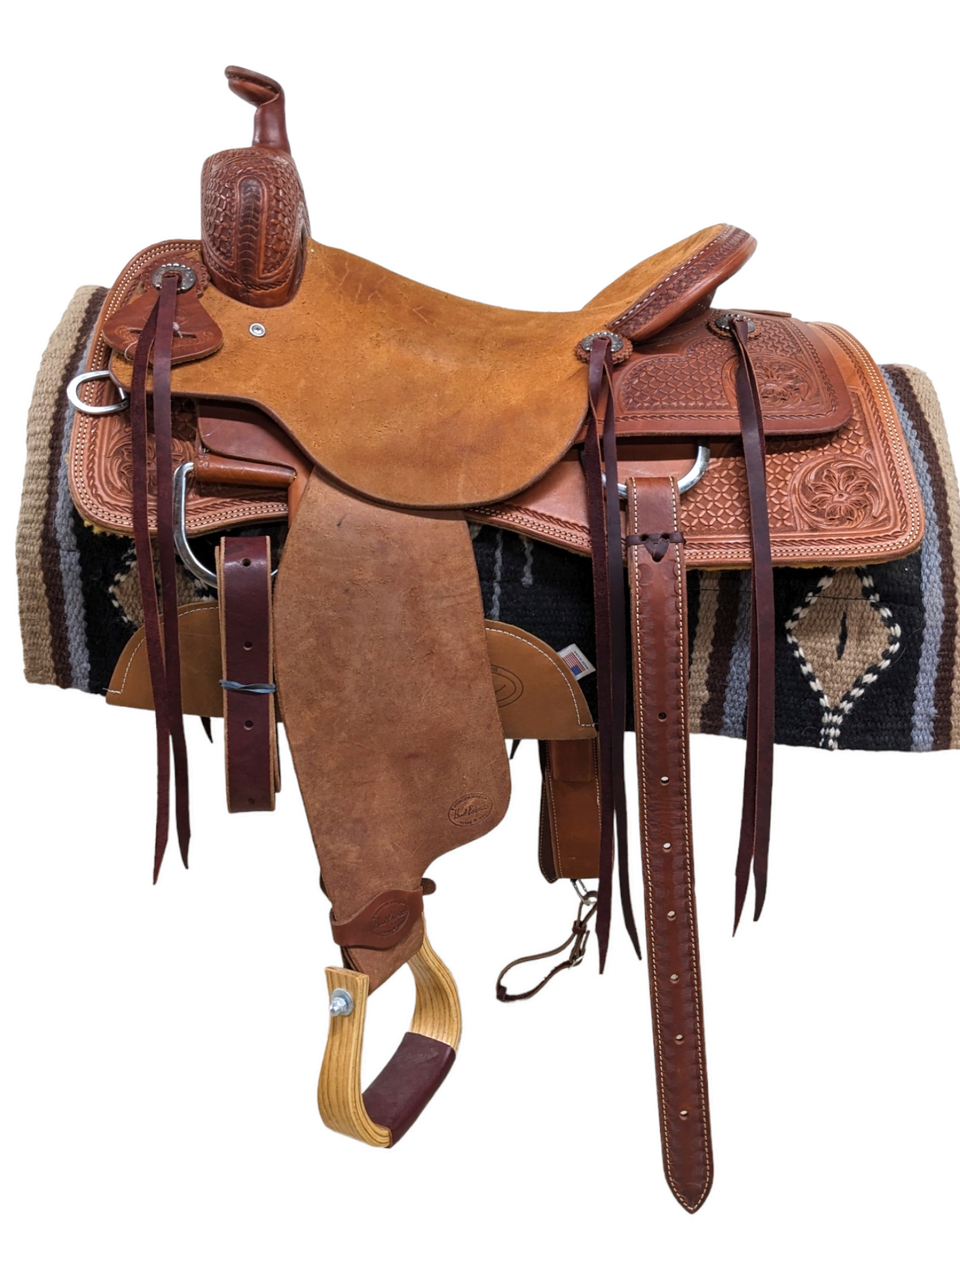 16" New HR Saddlery Western Ranch Cutting Saddle 1-995